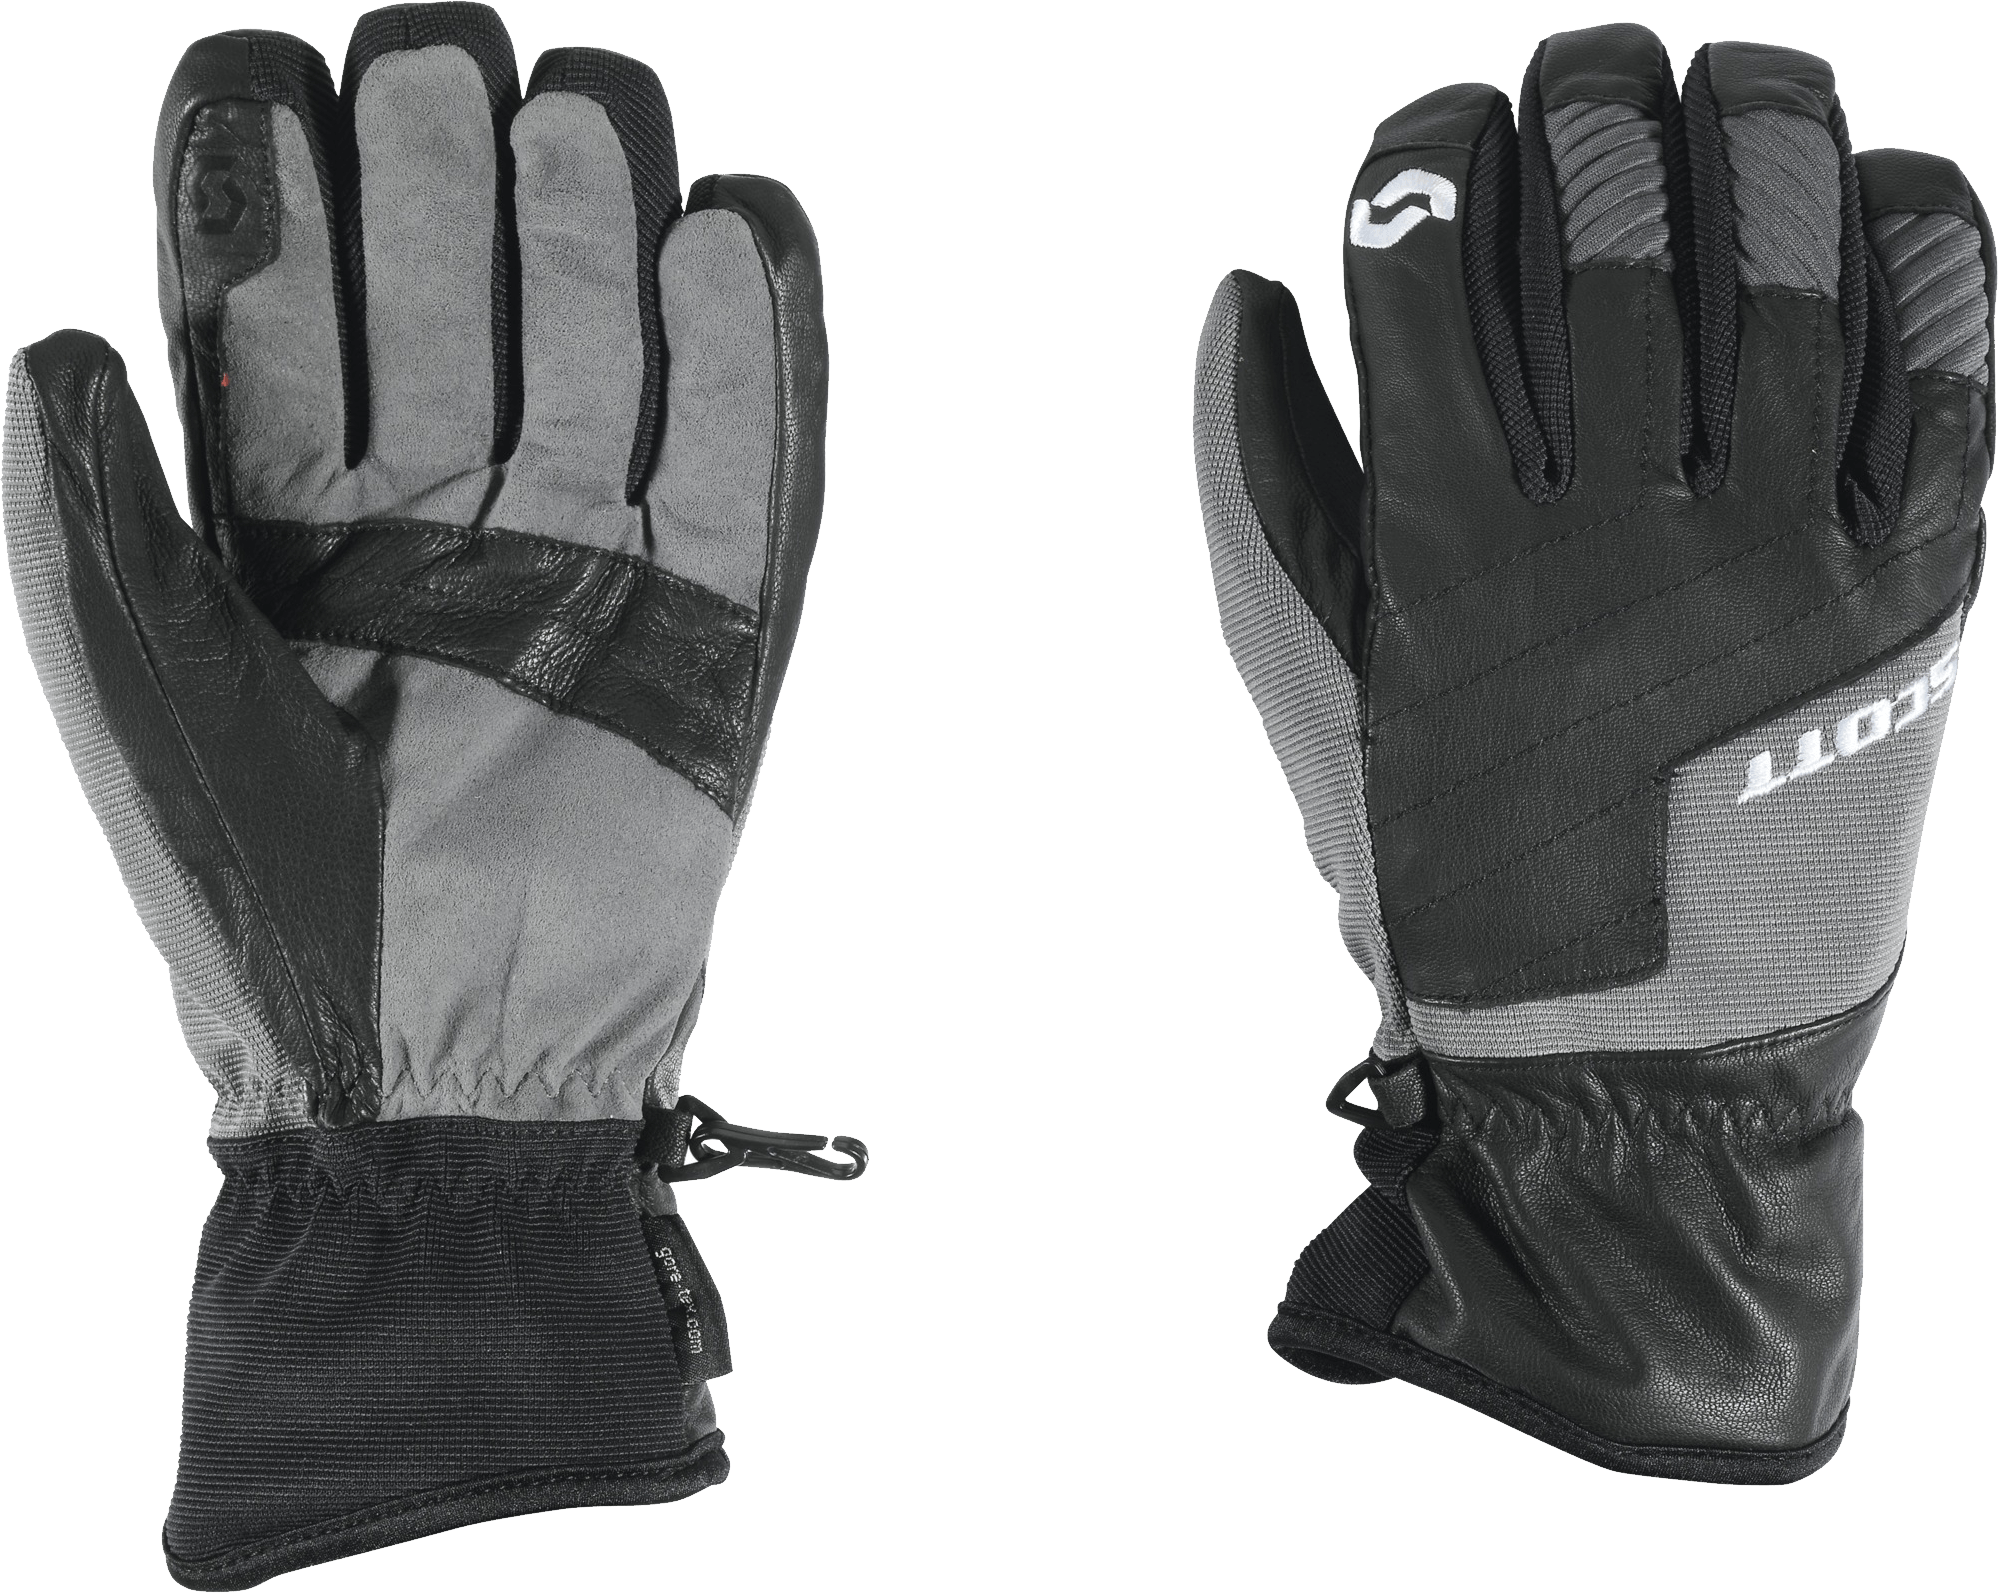 Gloves Png Image PNG Image